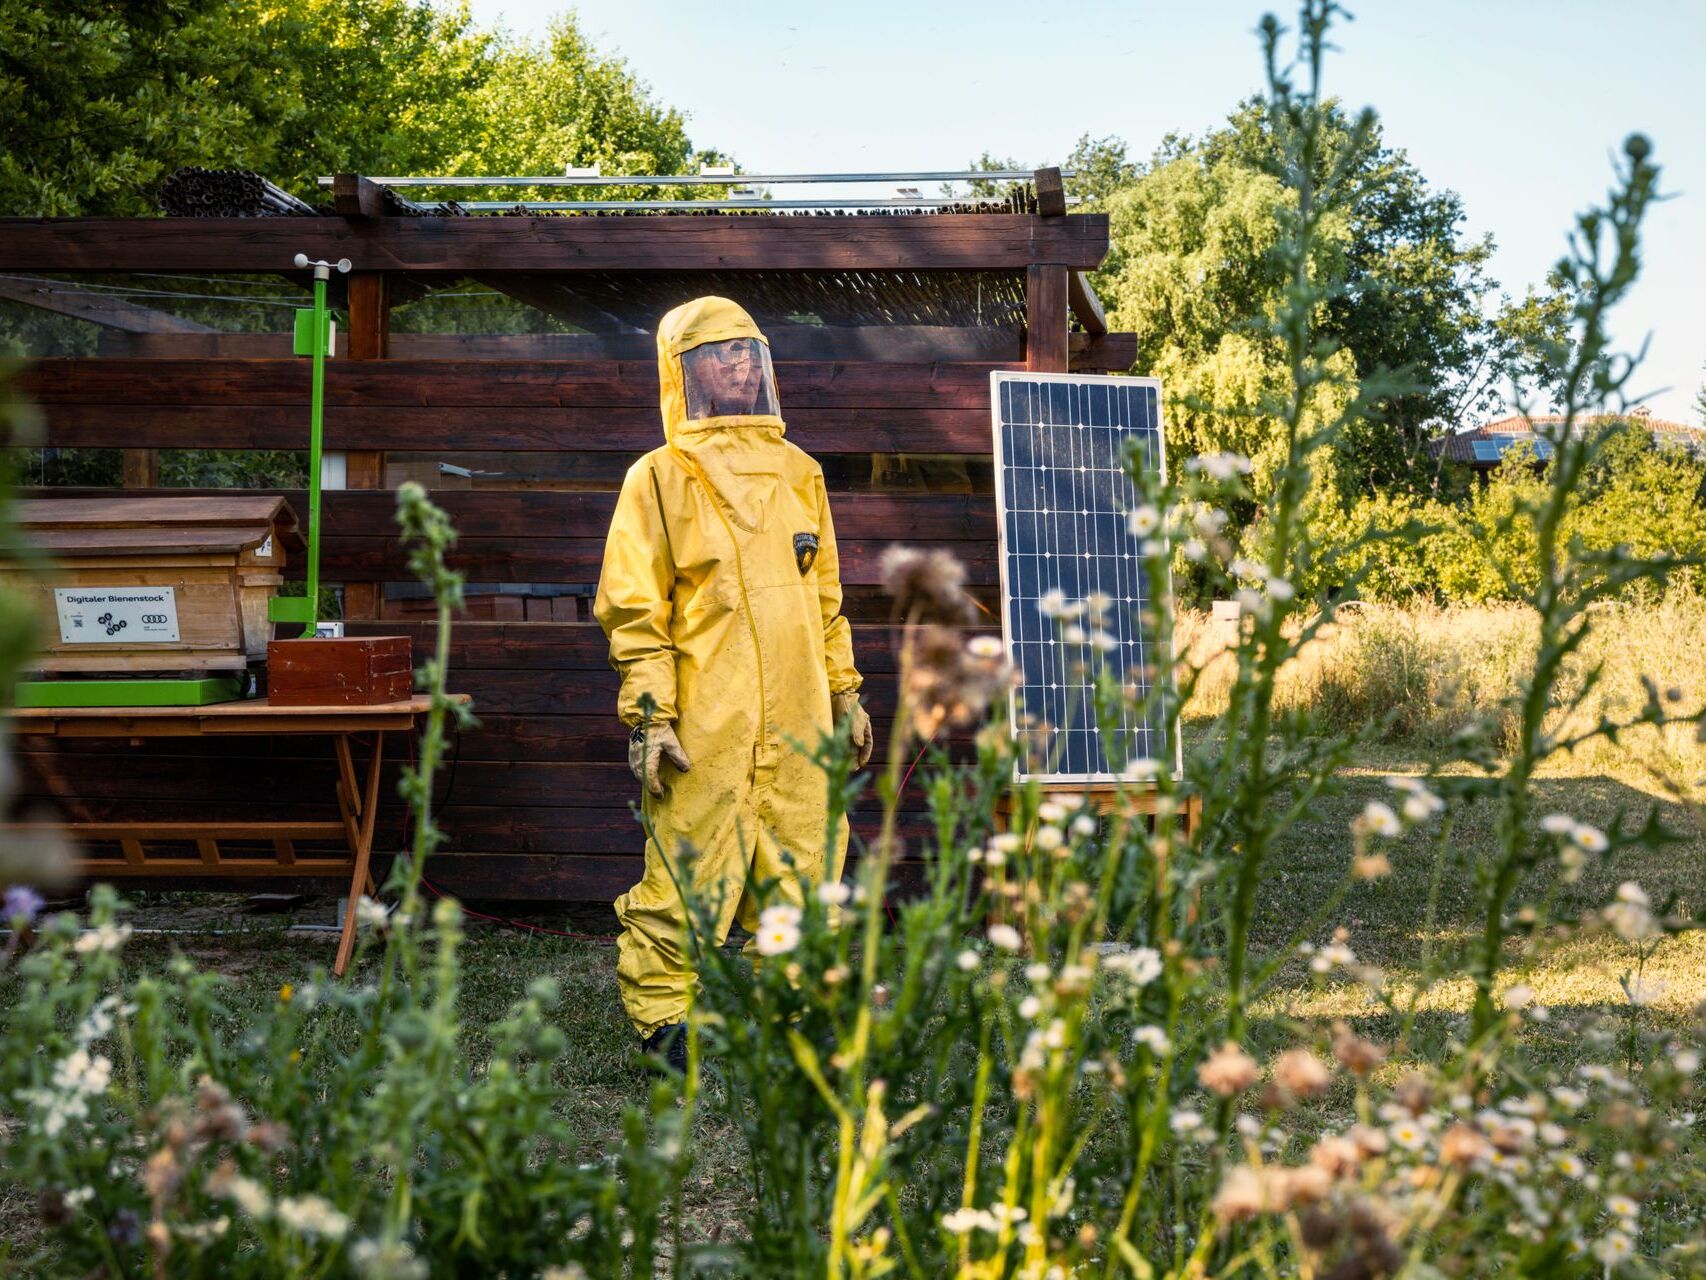 Équipée de douze ruches et d'une population d'environ 600.000 XNUMX abeilles, la ruche technologique Automobili Lamborghini est un outil indispensable pour surveiller l'écosystème entourant l'usine.